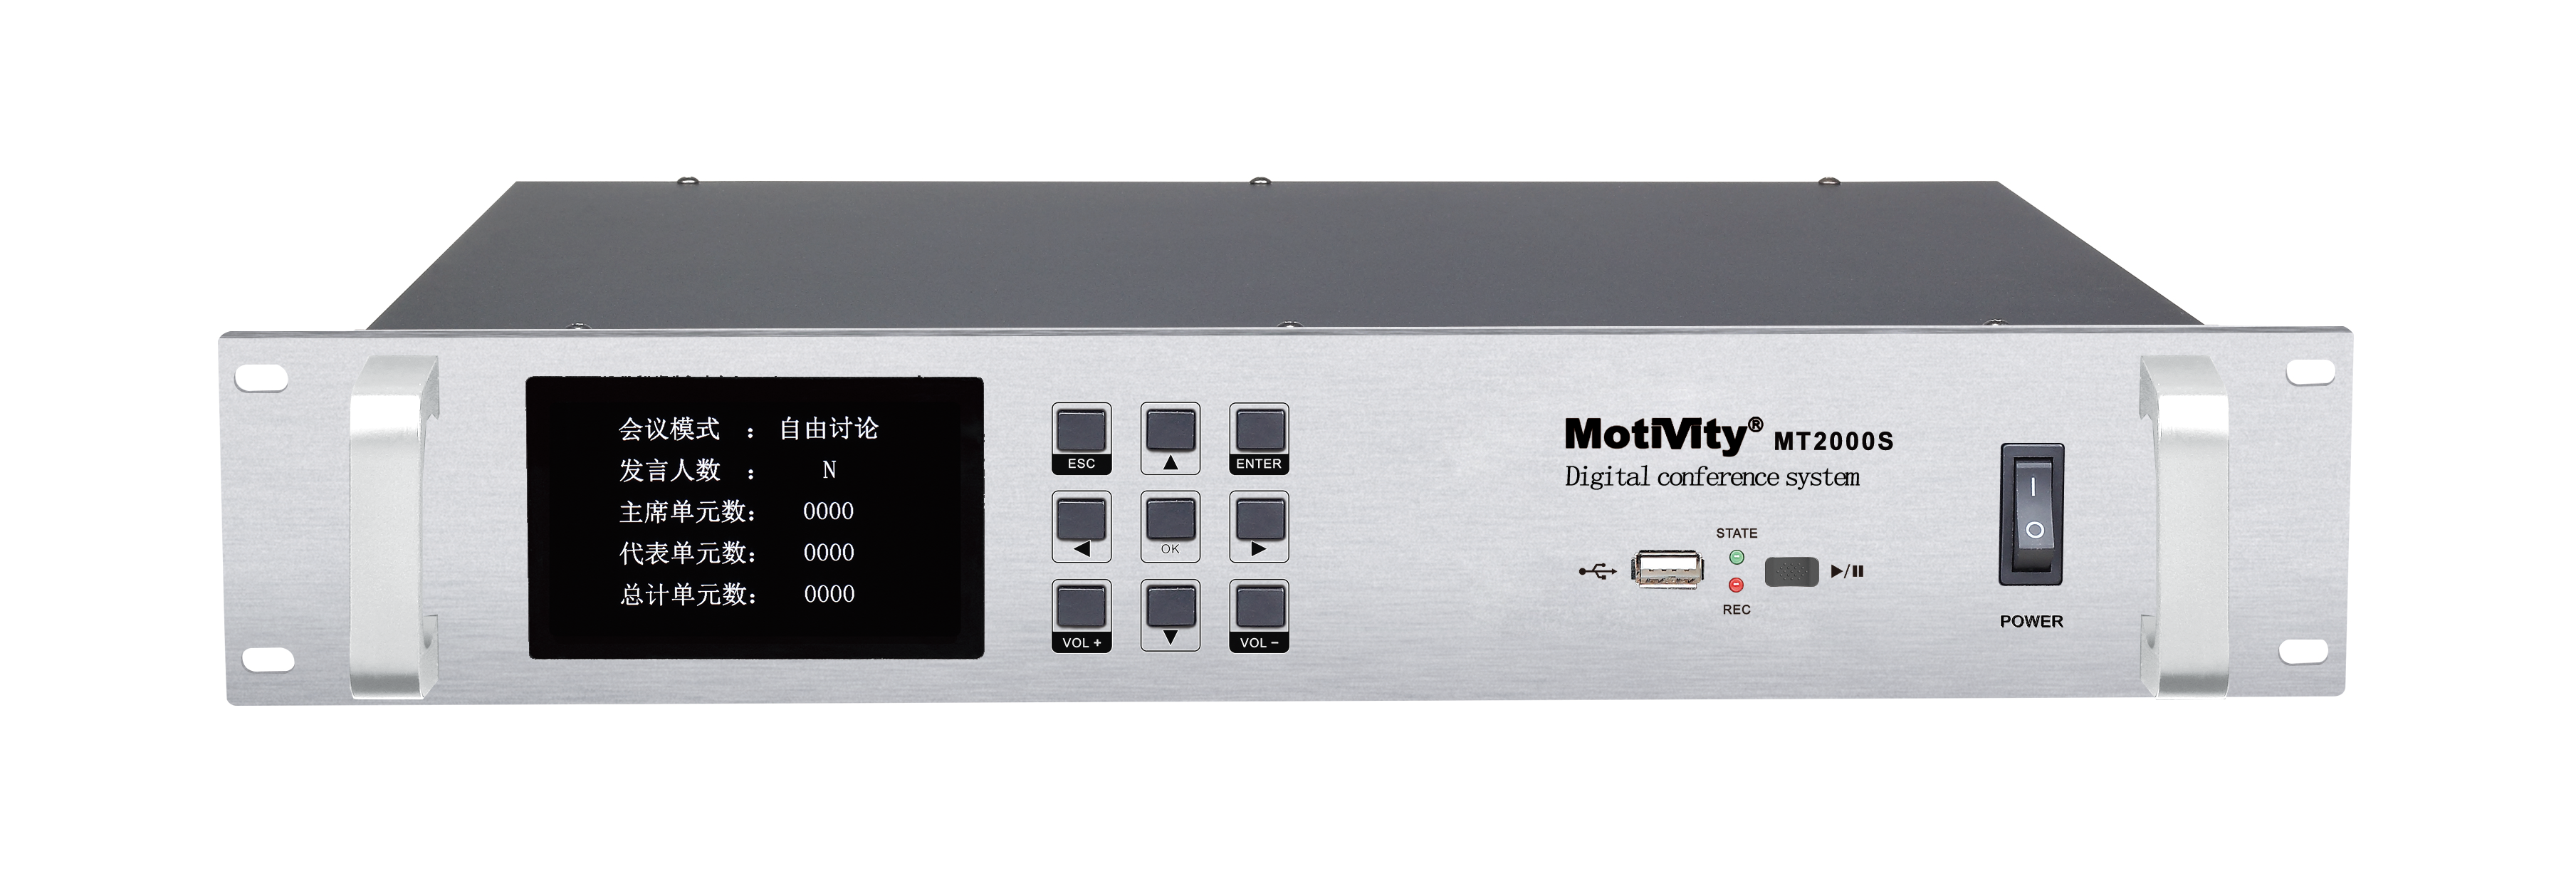 中国MOTIVITY MT2000SVT系统主机（讨论、表决、摄像跟踪型）产品图片